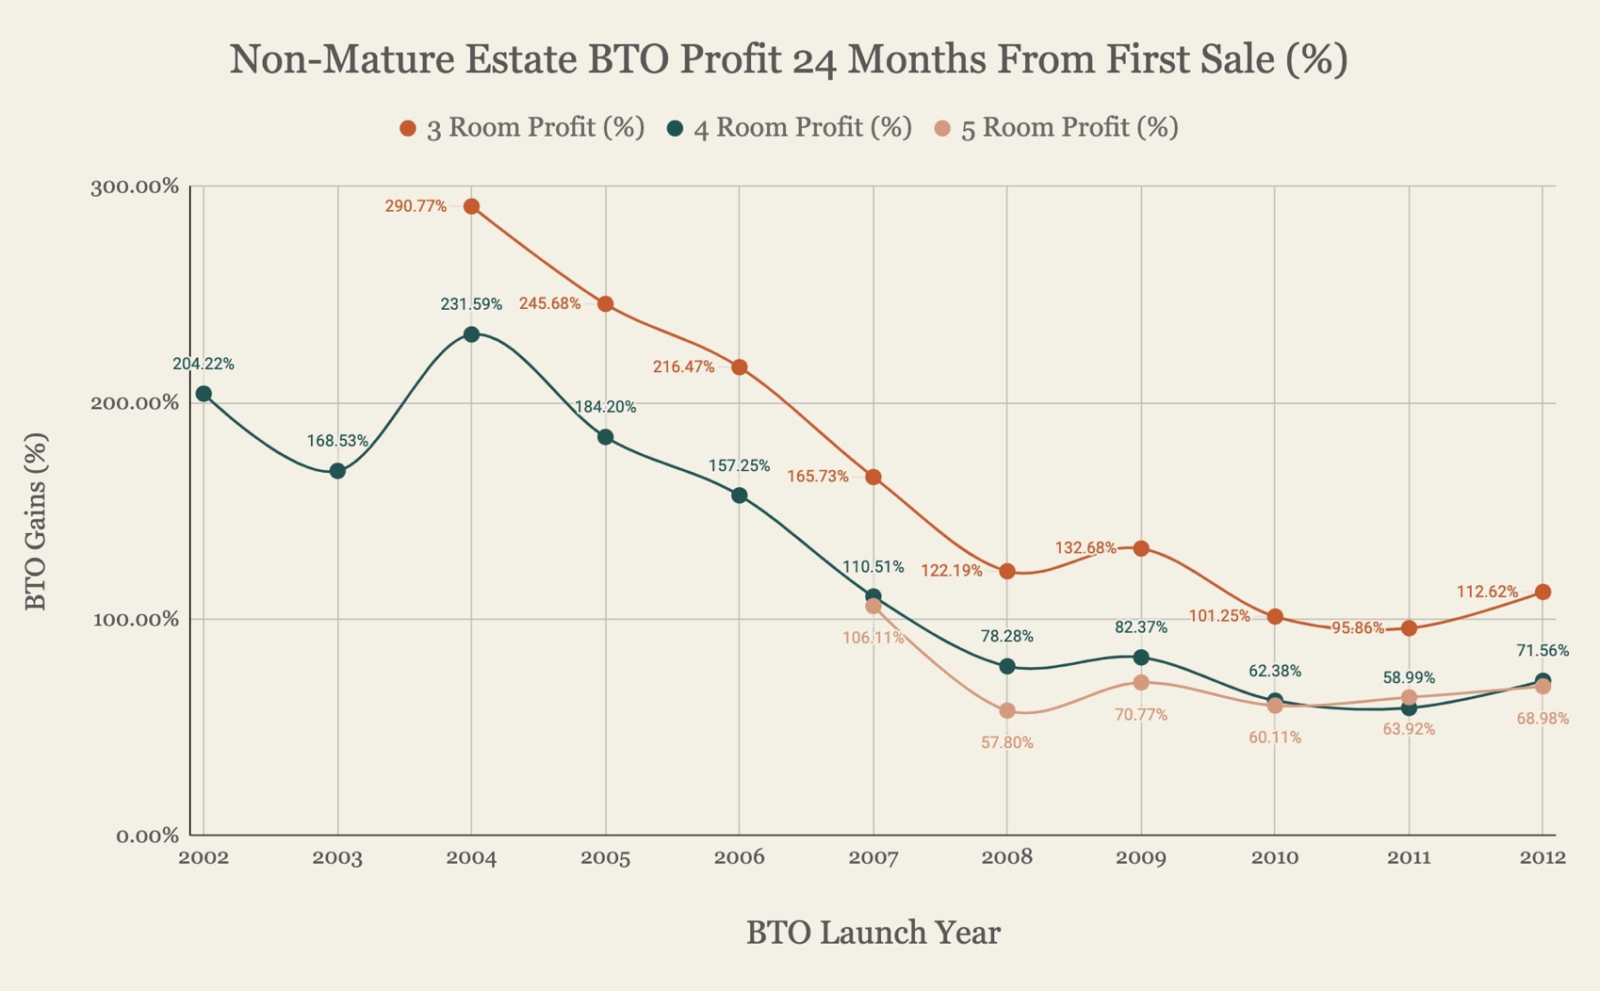 Non mature estate BTO profits